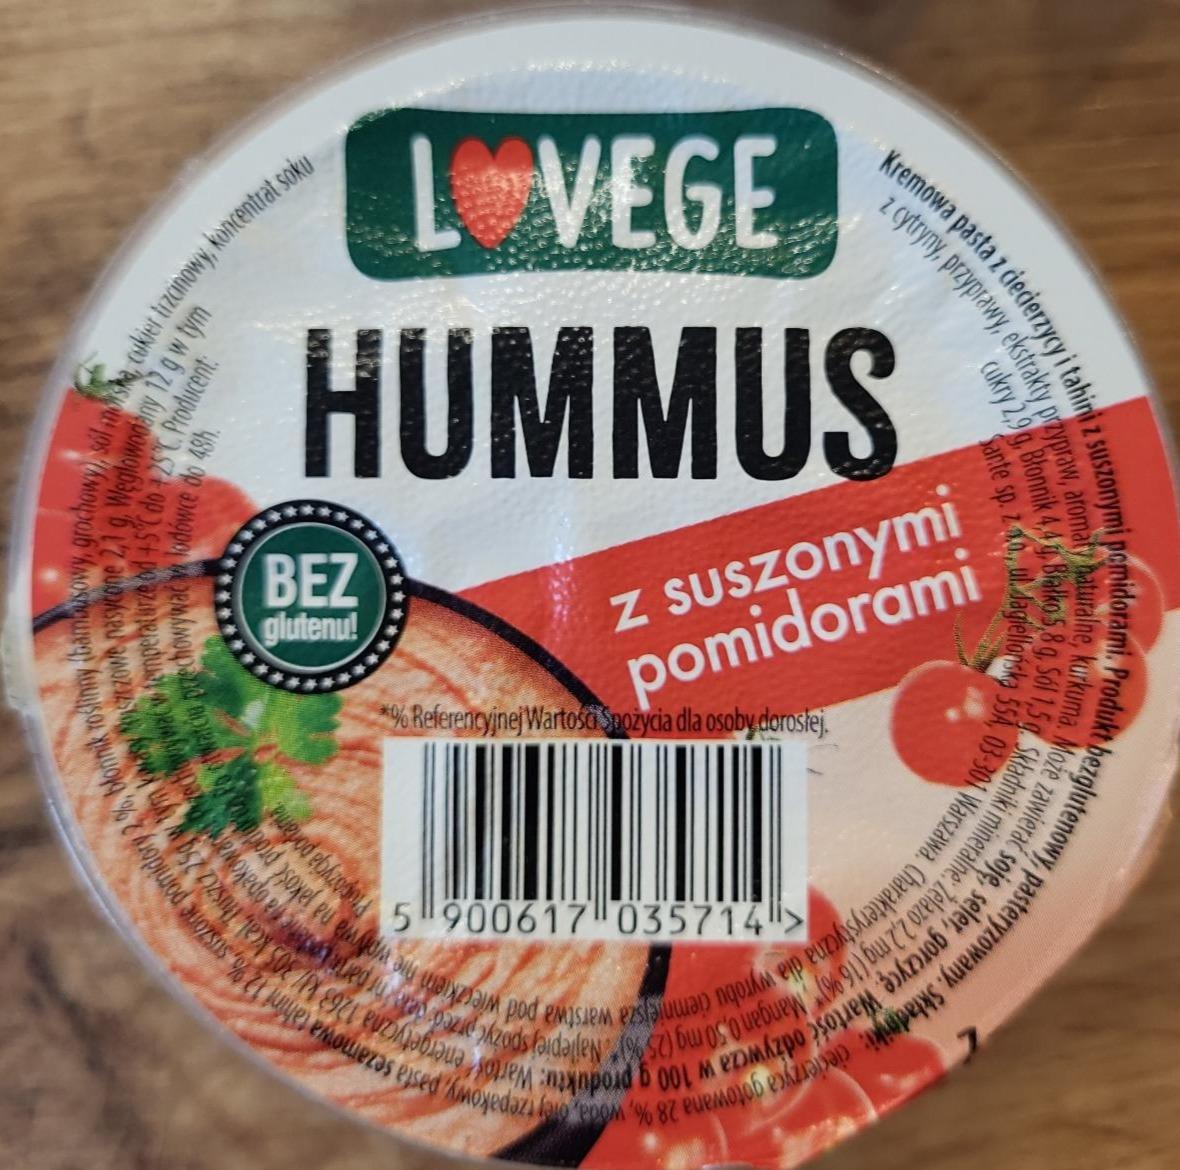 Фото - Hummus z suszonymi pomidorami i love vege